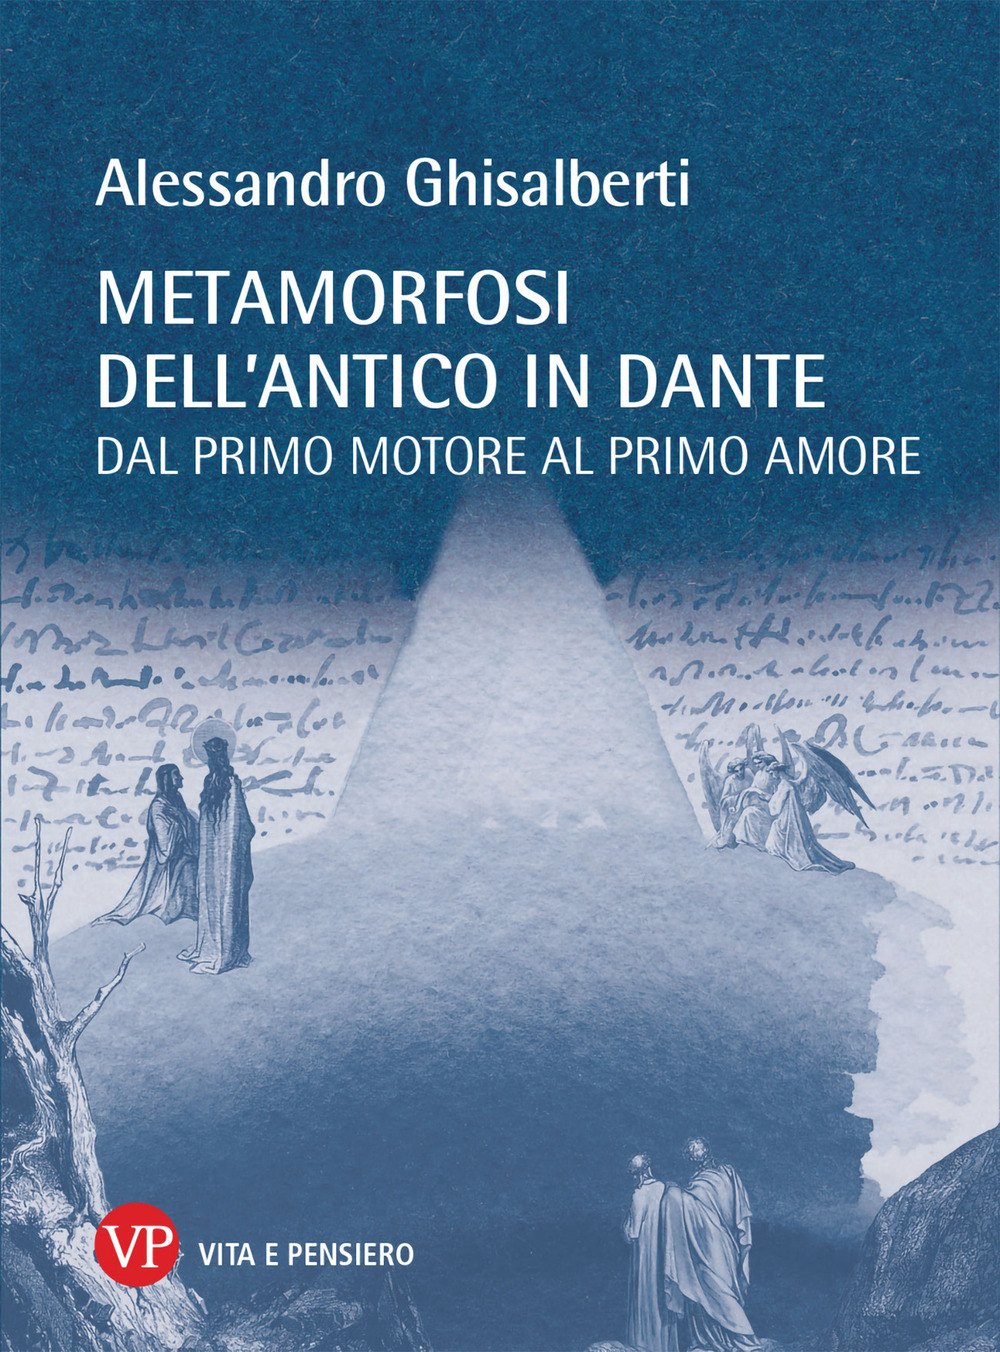 Libri Alessandro Ghisalberti - Metamorfosi Dell'antico In Dante. Dal Primo Motore Al Primo Amore NUOVO SIGILLATO, EDIZIONE DEL 22/07/2021 SUBITO DISPONIBILE